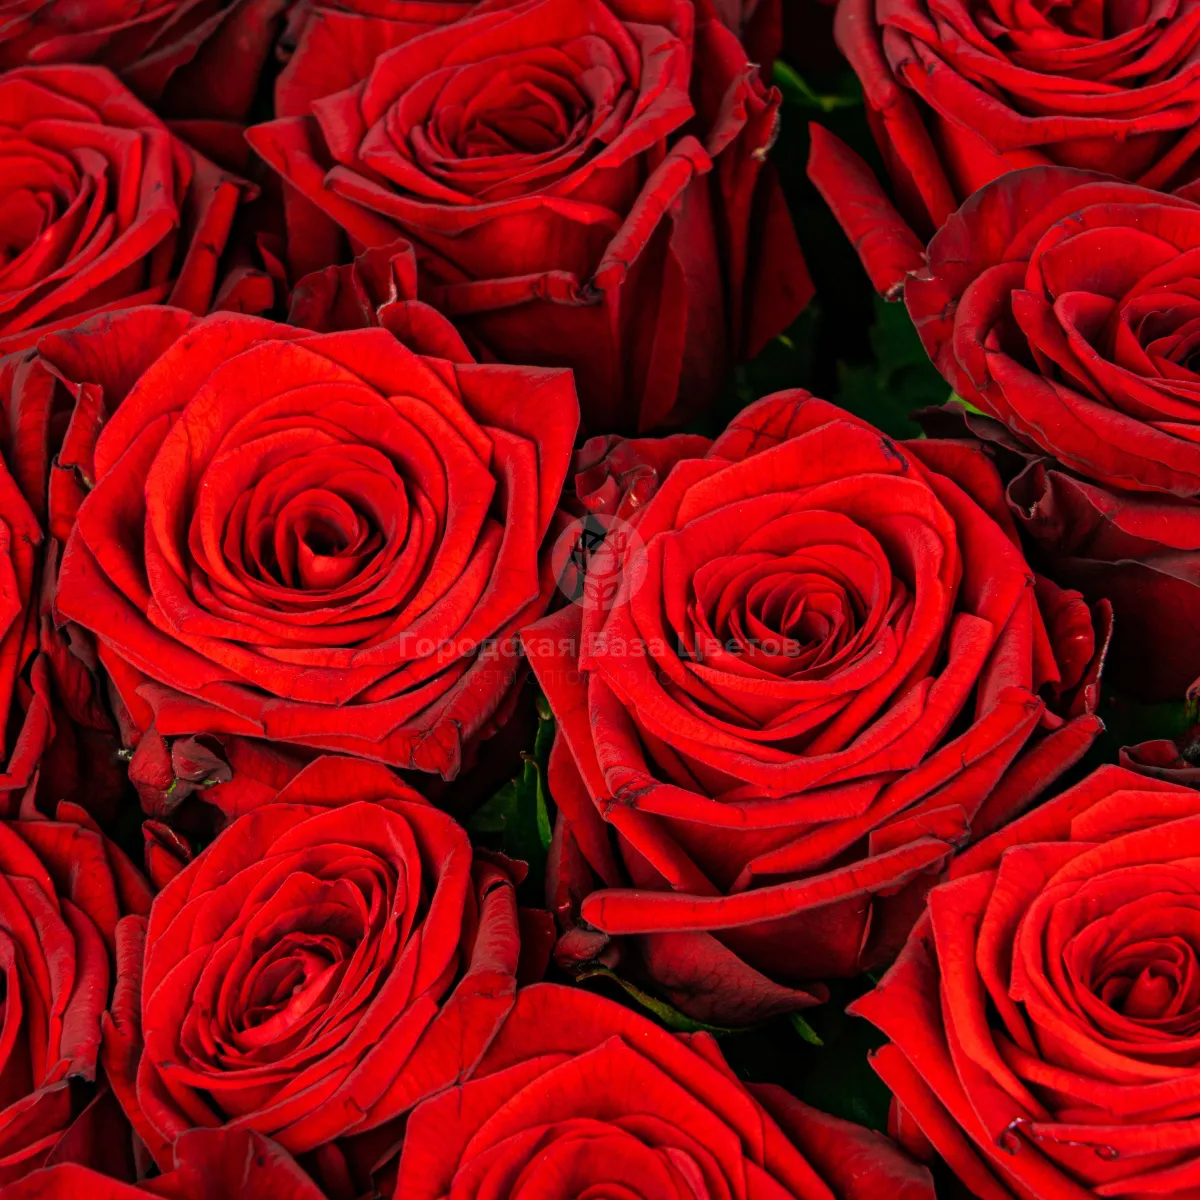 63 красные розы (70 см)